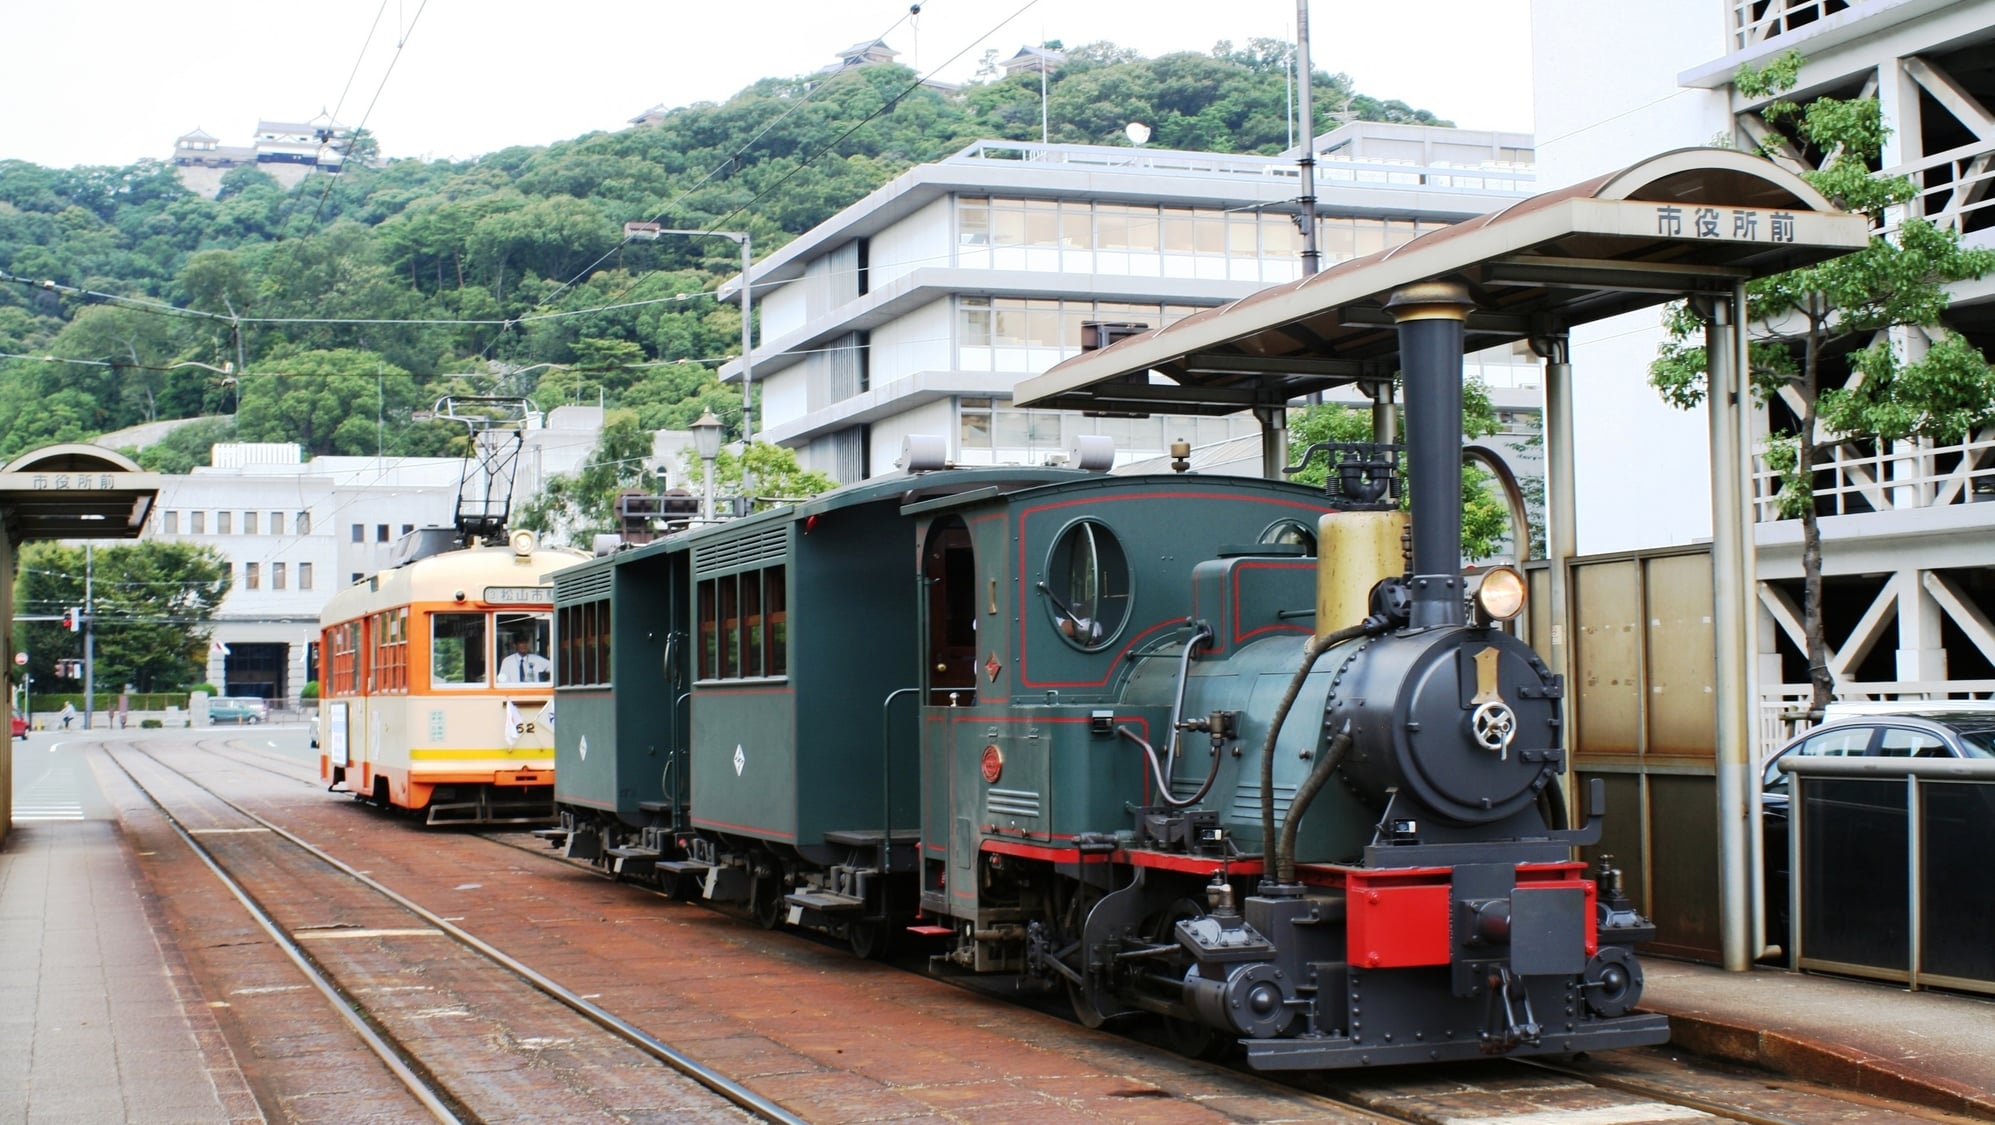 松山で人気の「坊ちゃん列車」に乗ろう！観光のポイントを徹底解説します – skyticket 観光ガイド